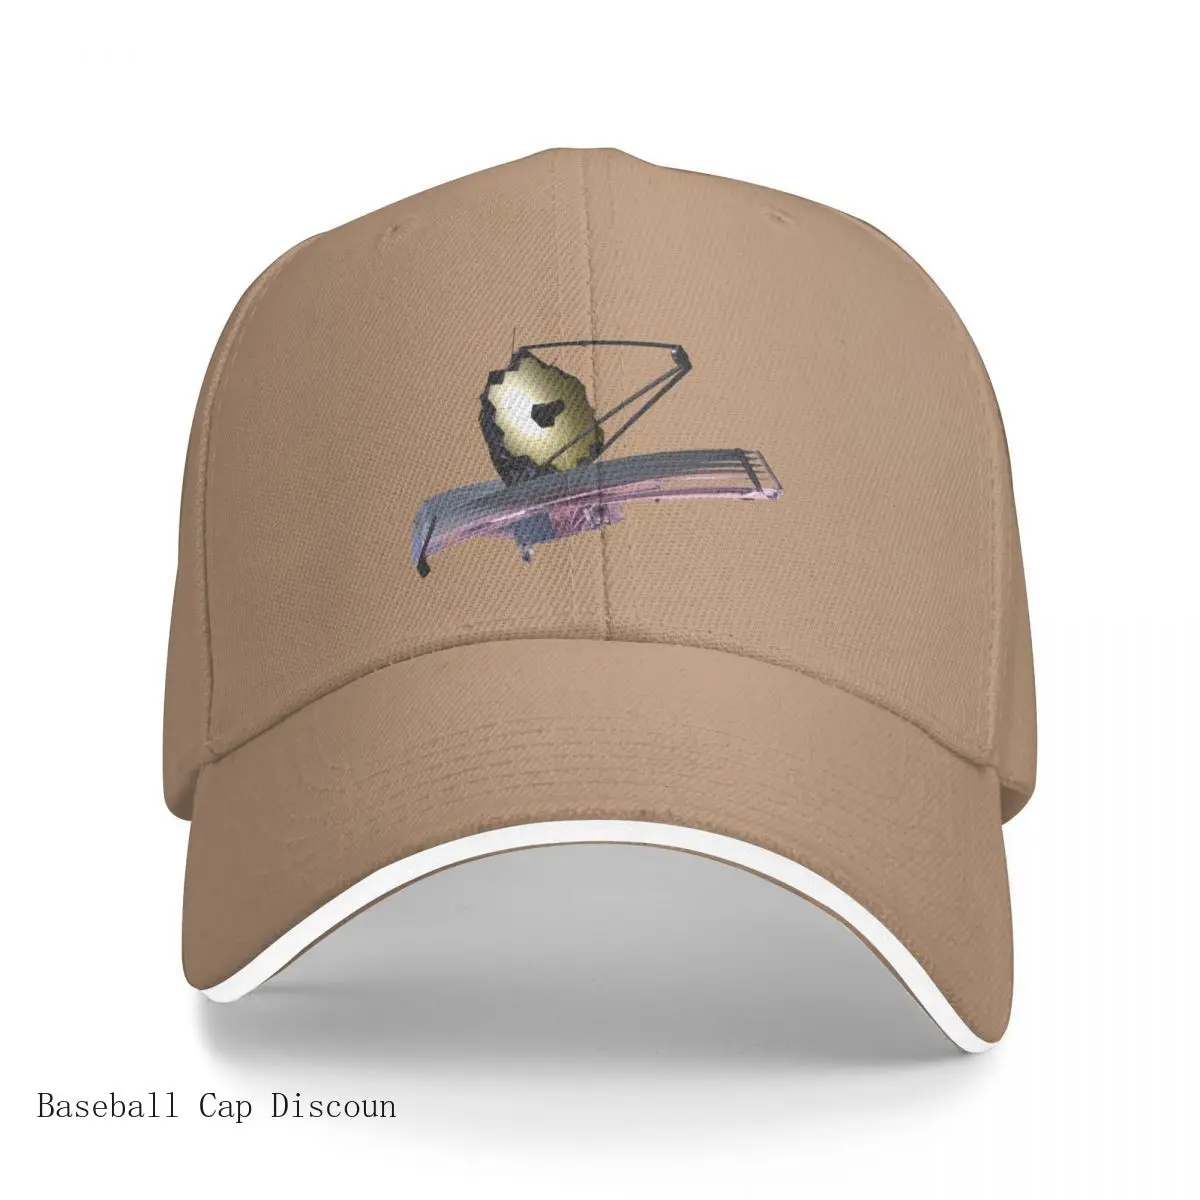 

New JWST James Webb Space Telescope Sunshield Bucket Hat Baseball Cap Visor golf hat caps for men Women's